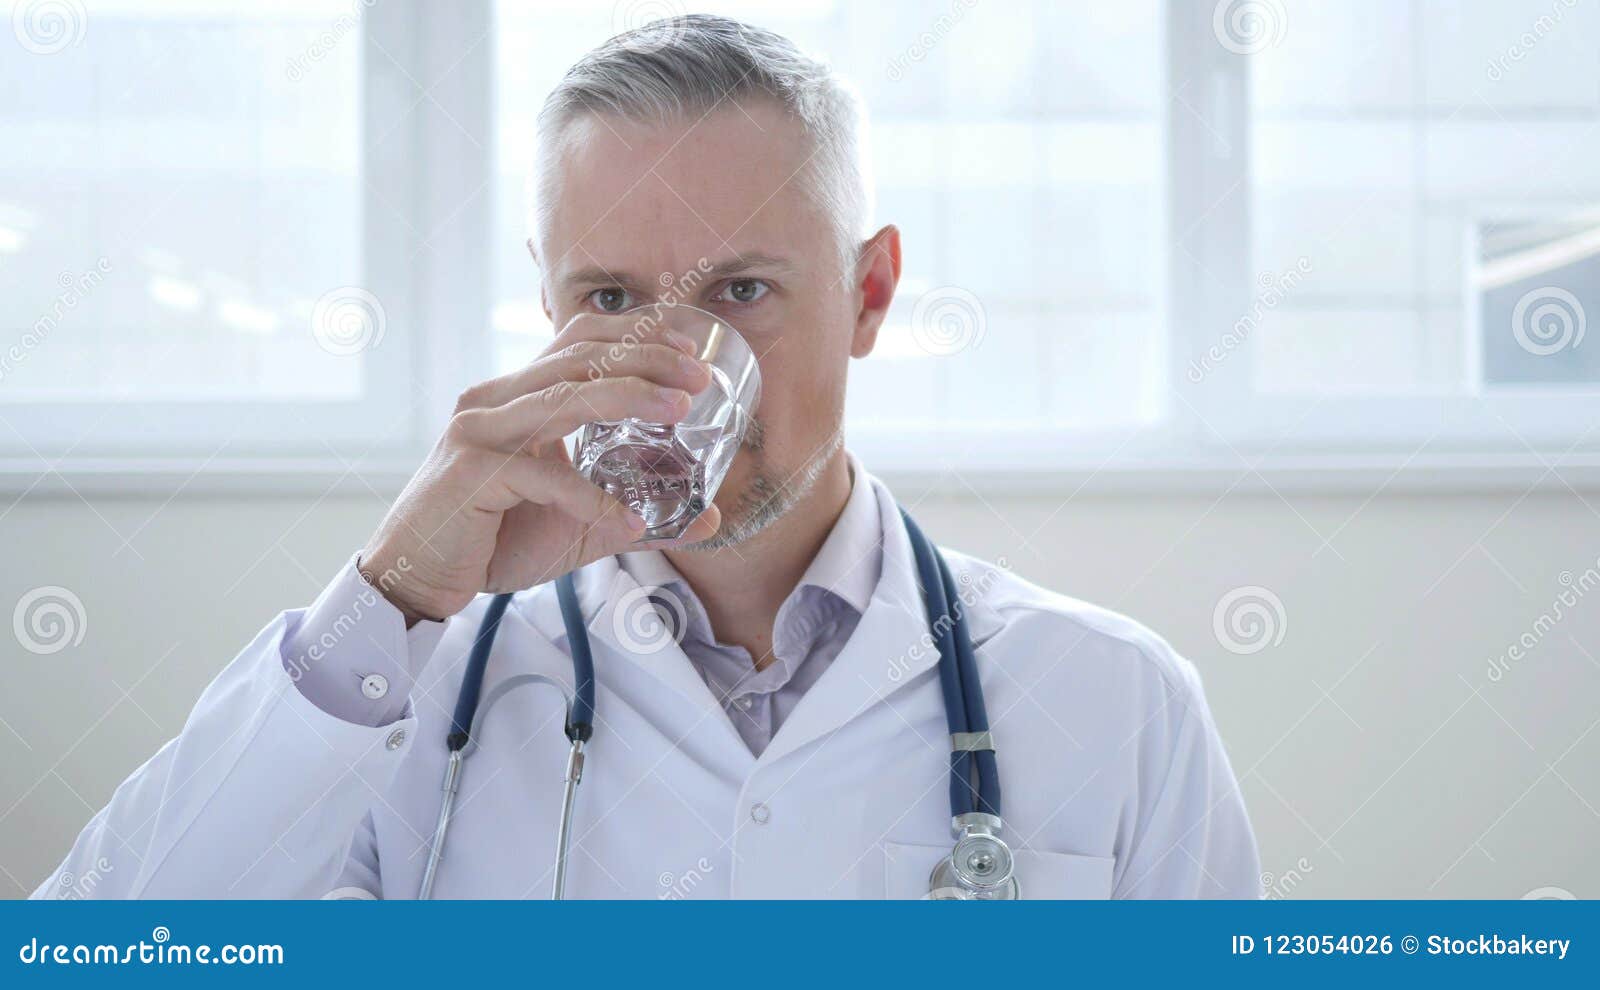 Врачи пьют много. Доктор пьет воду. Медик пьет воду. Медицинский работник пьет воду. Медики пьют.